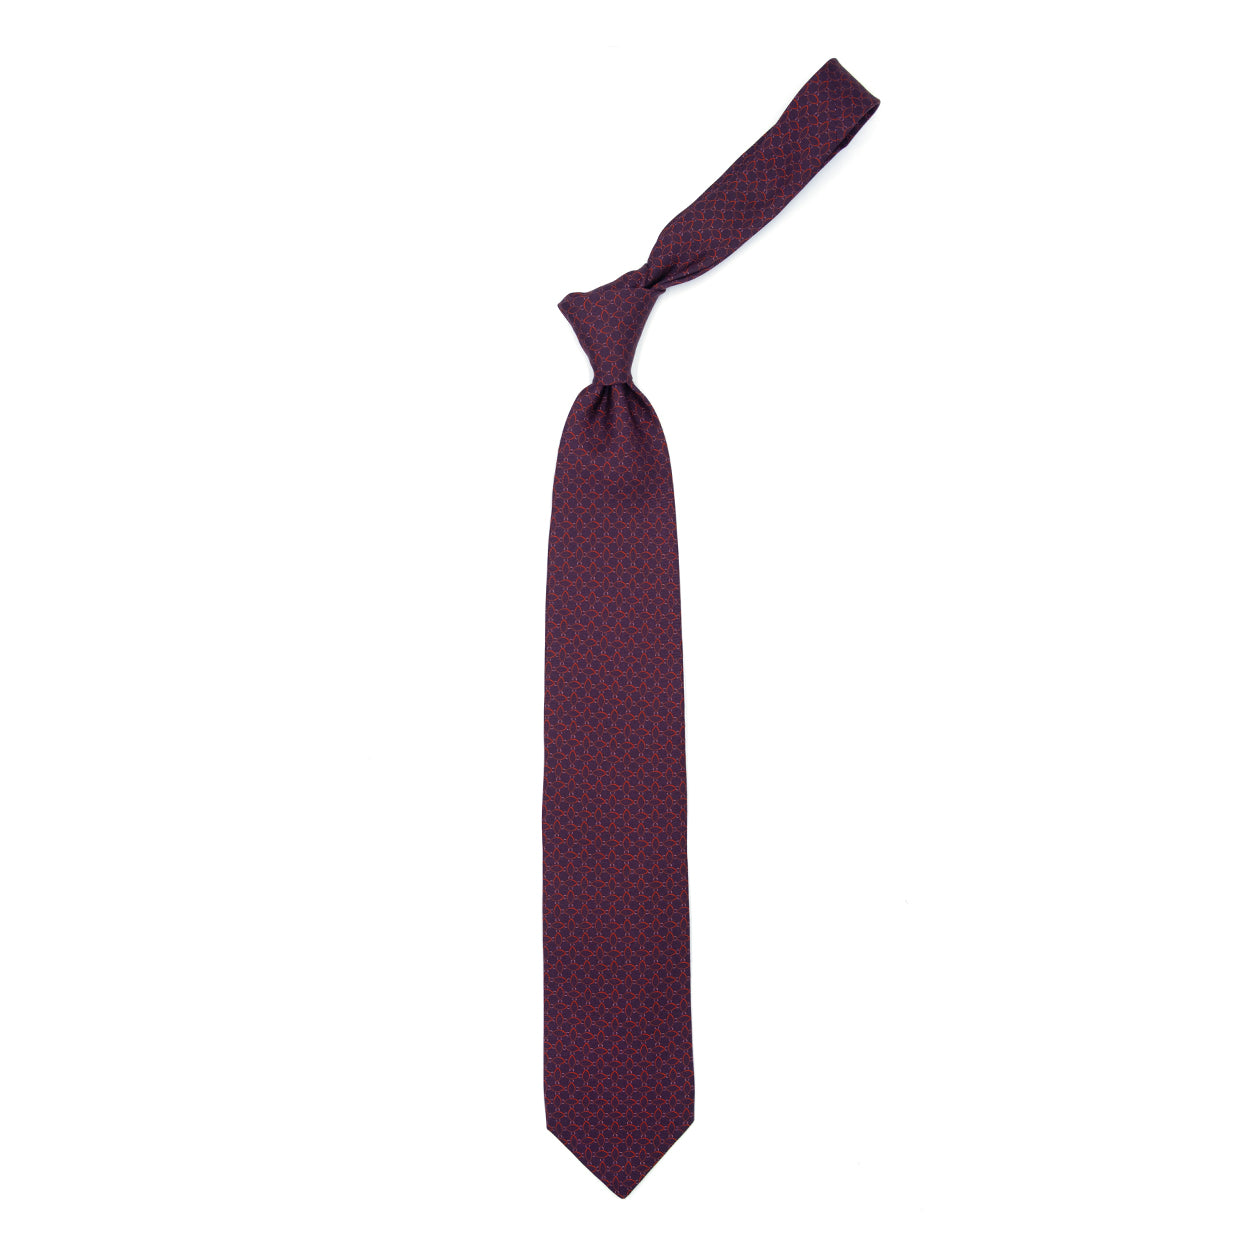 Cravatta bordeaux con pattern astratto rosso